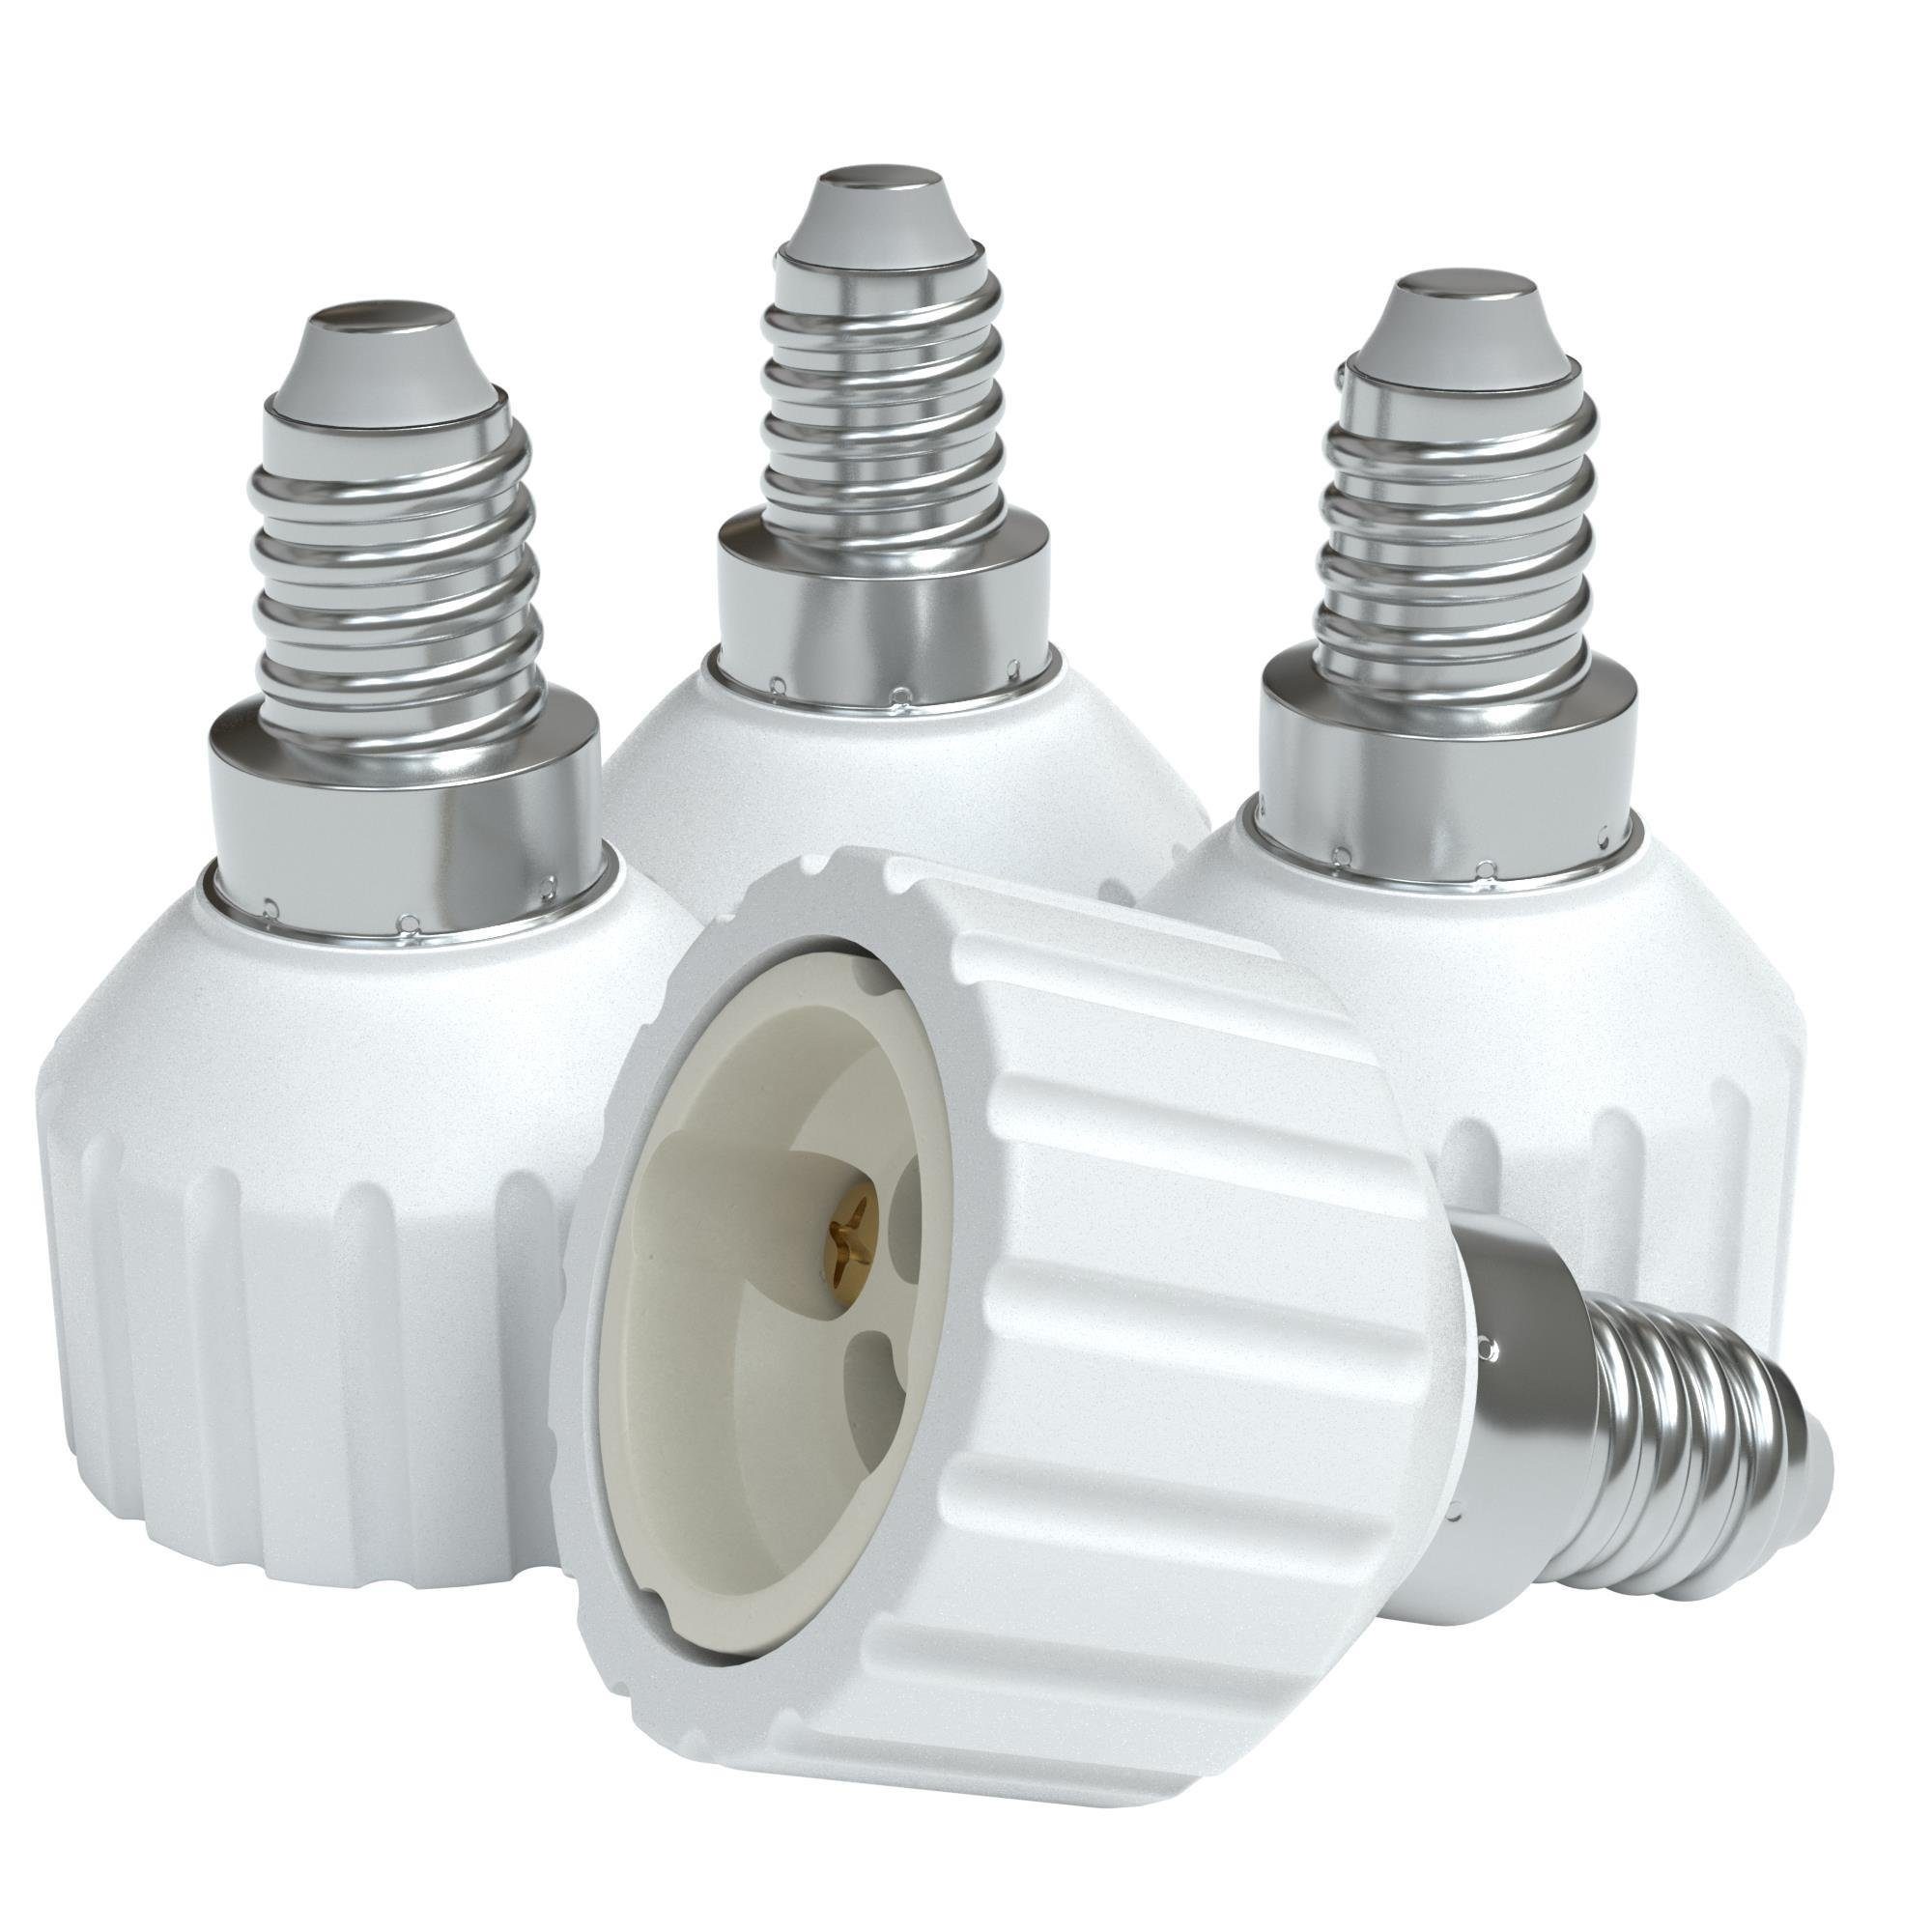 EAZY CASE Lampenfassung Lampensockel Sets E14 auf GU10 Adapter Fassung Lampe Stecker Glühbirne, (Spar-Set, 4-St), Lampenadapter E14 zu GU10 Adapter Lampen LED Halogen Energiesparlampen | Lampenfassungen